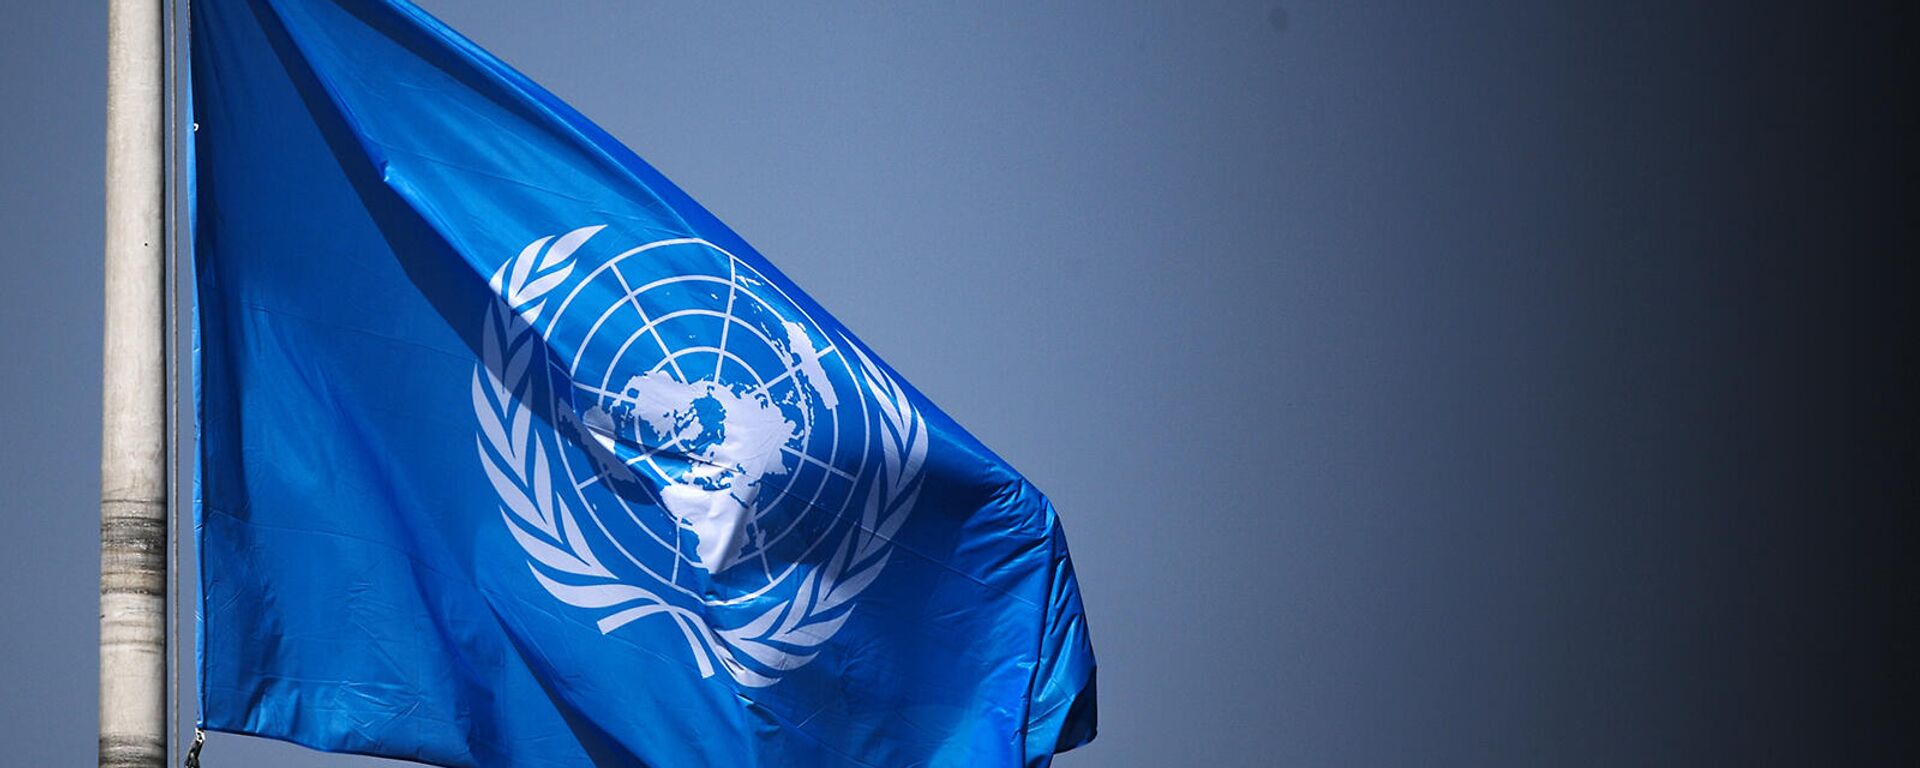 Флаг Организации Объединенных Наций на территории Дворца мира в Гааге - Sputnik Армения, 1920, 22.09.2021